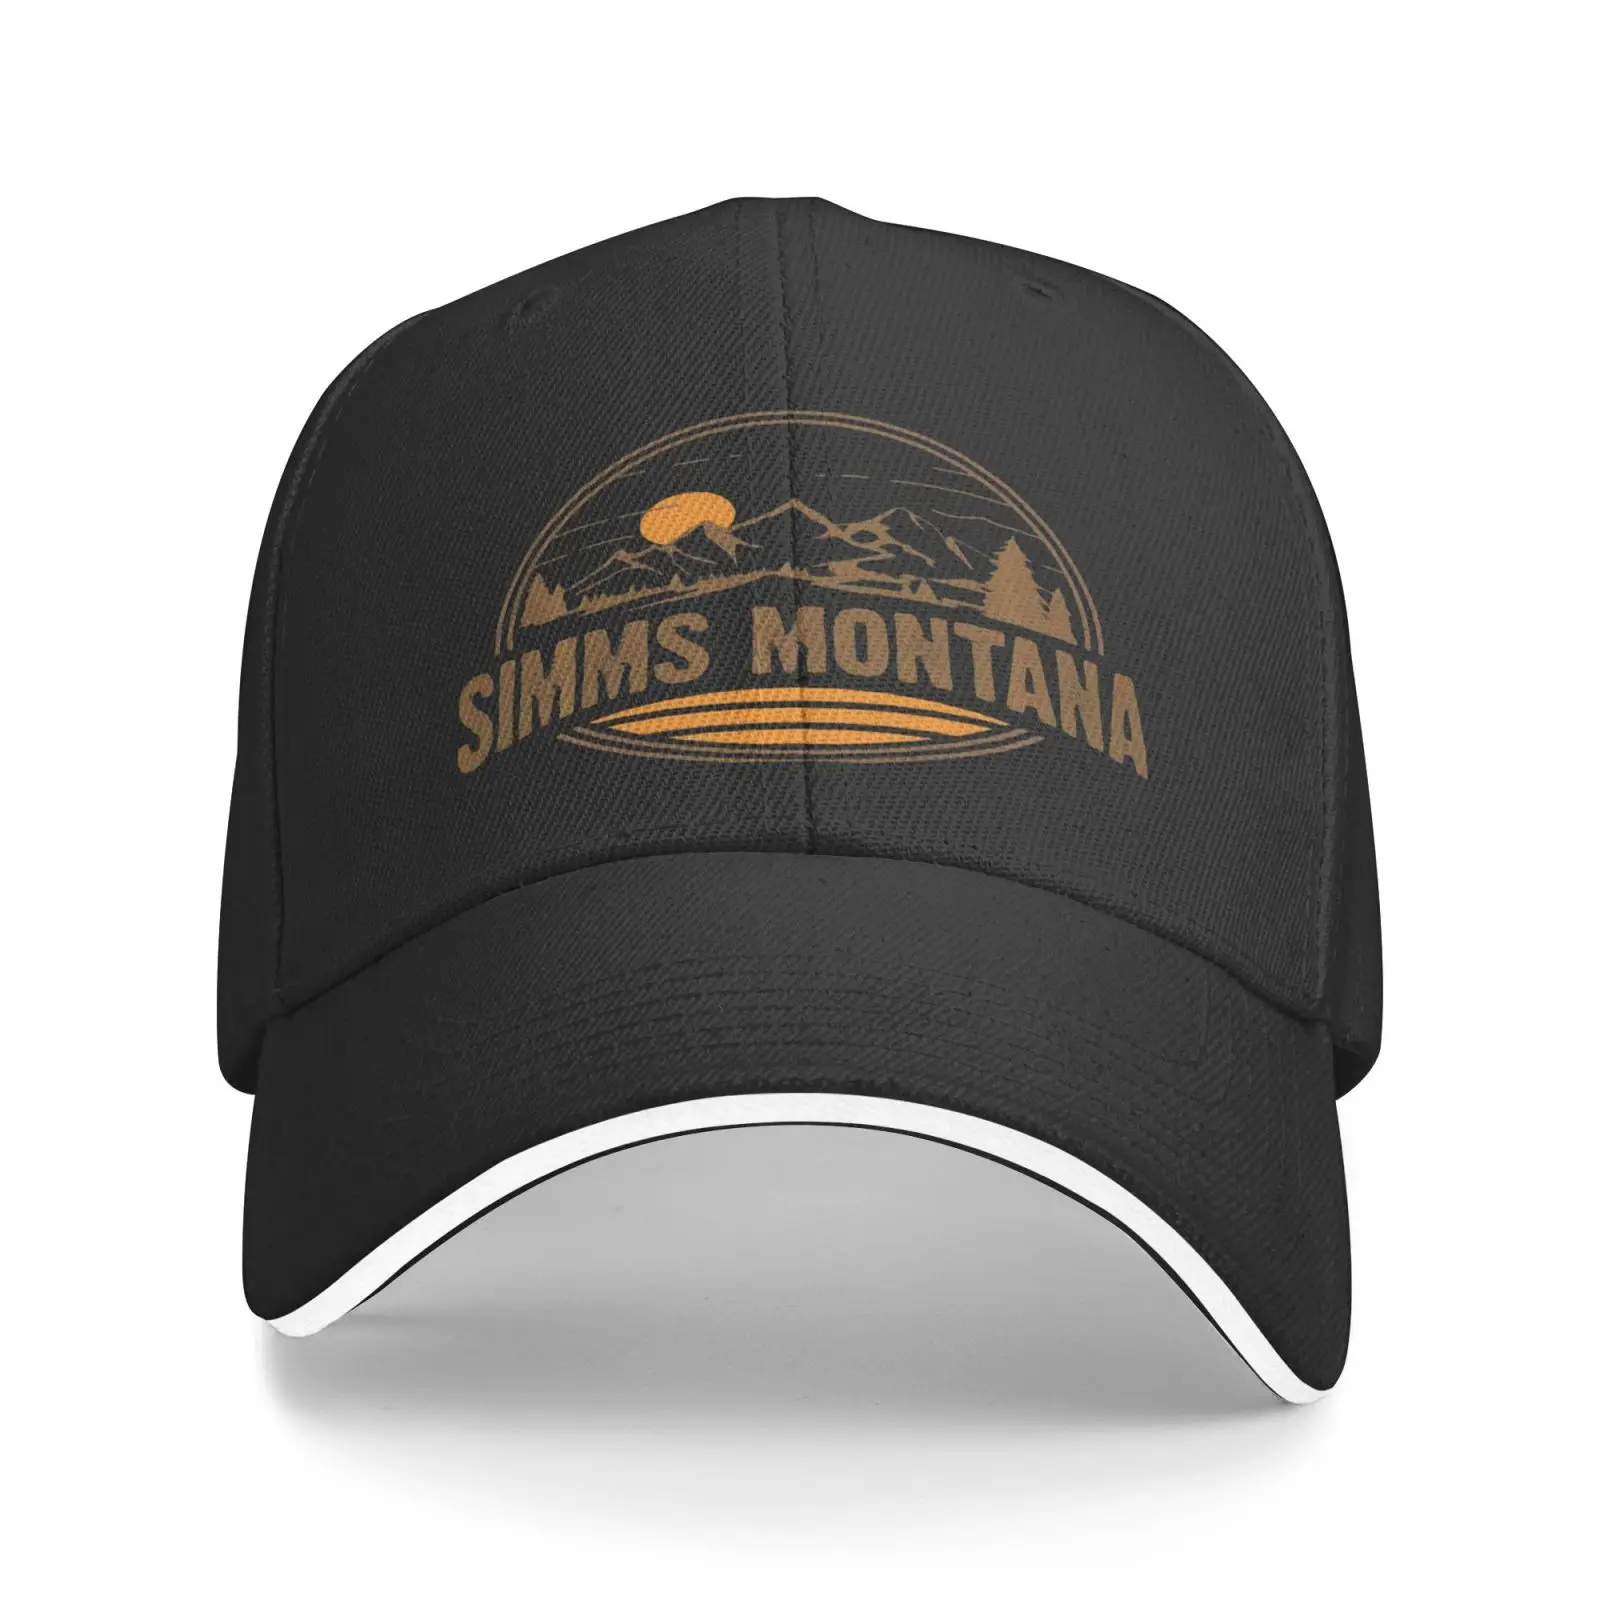 Simms Montana Dağ Yürüyüş Hatıra 1205 erkek Kap Kapaklar Cowgirl Yaz Balıkçılık kadın Şapka Kova Şapka kamyon şoförü şapkası Bere Erkekler